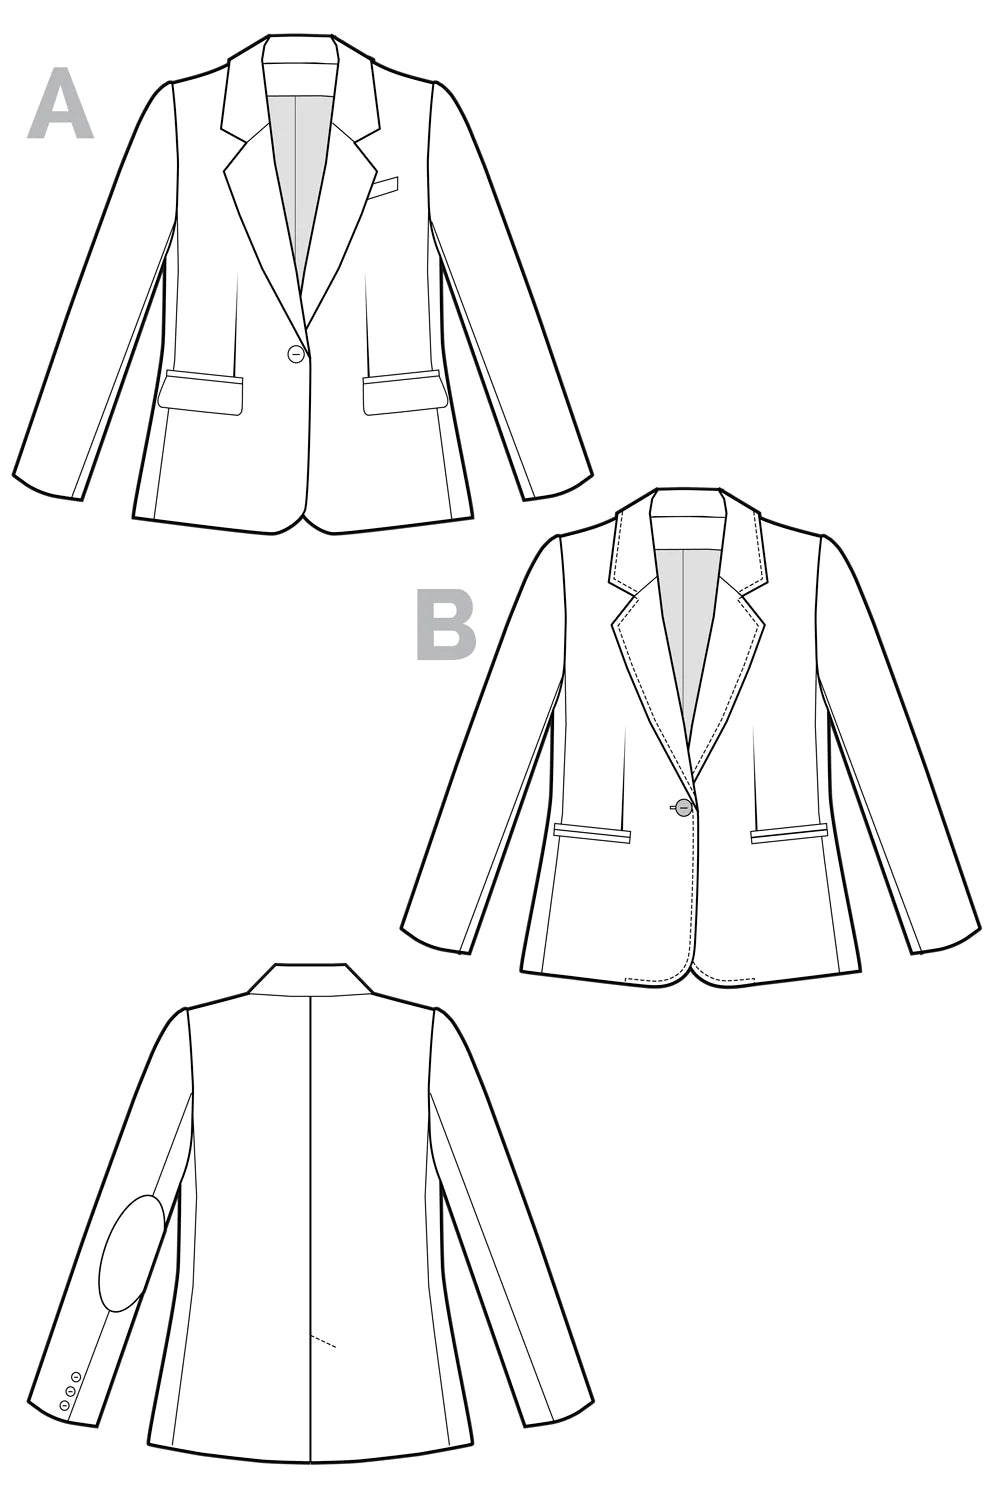 JASIKA jacket | Paper pattern - Closet Core Patterns 